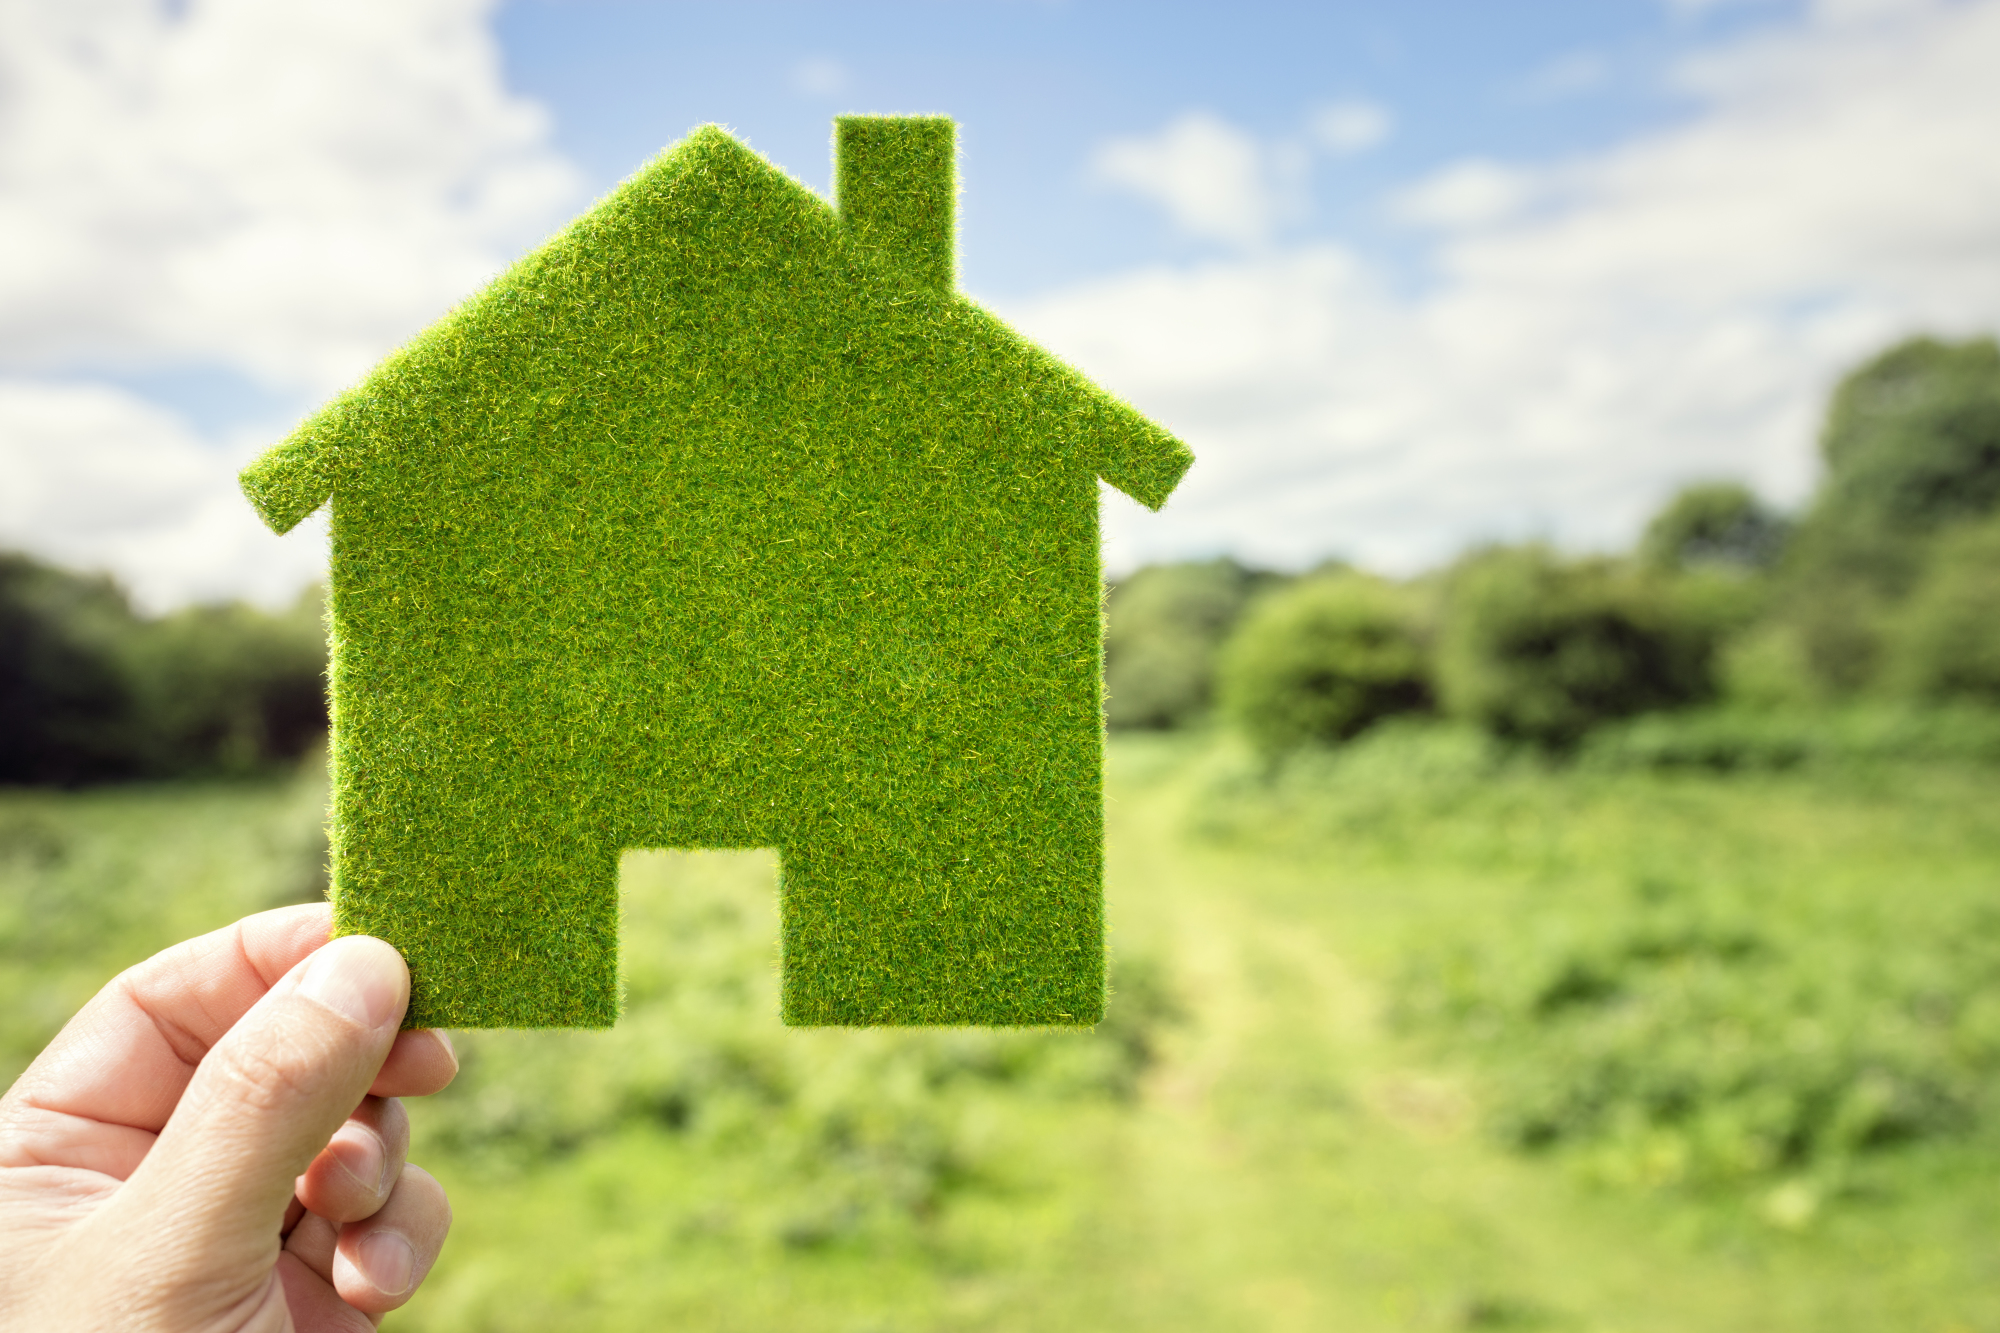 Une personne tient une maison verte